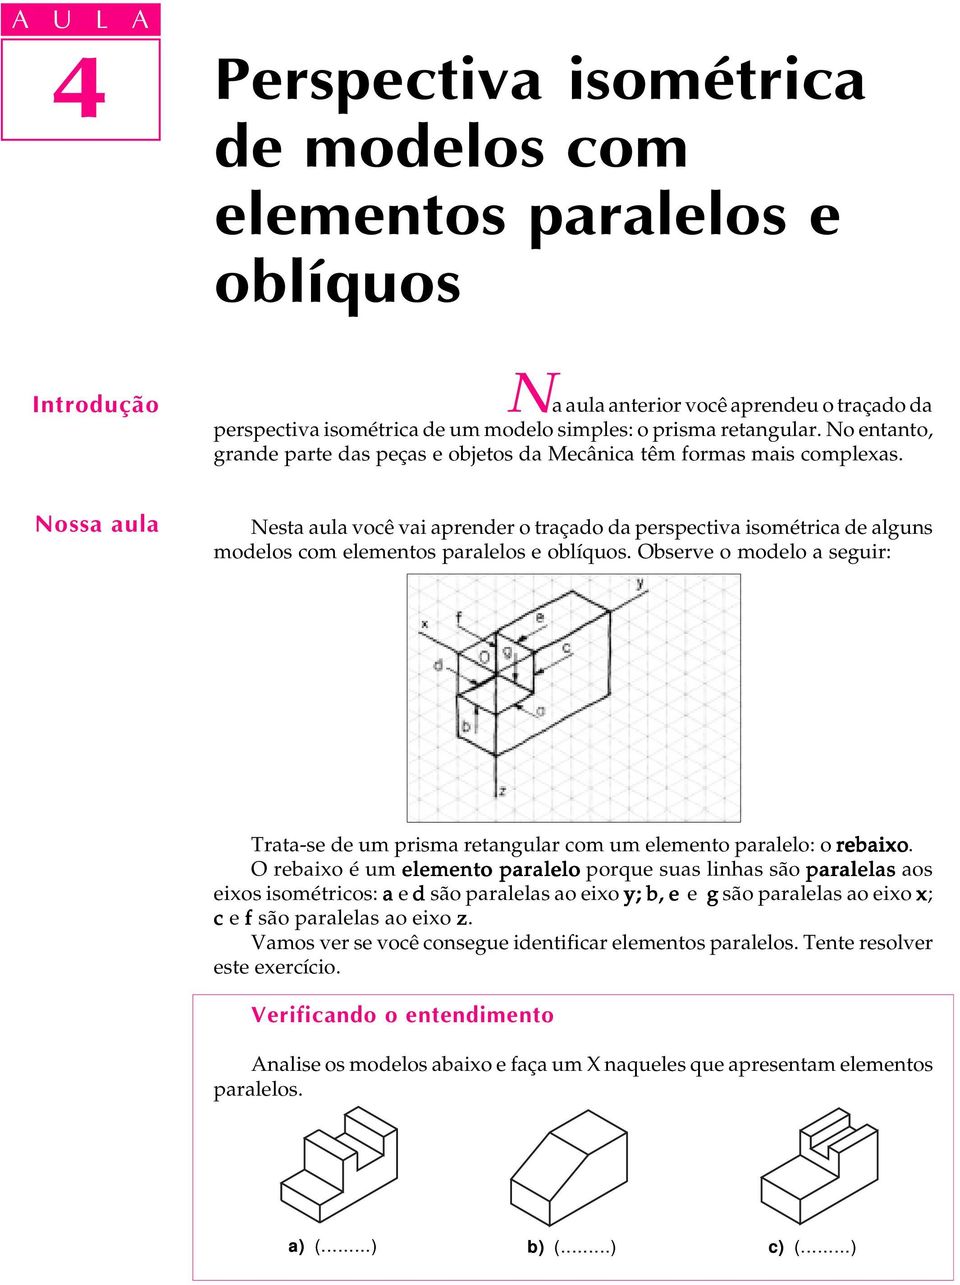 Nossa aula Nesta aula você vai aprender o traçado da perspectiva isométrica de alguns modelos com elementos paralelos e oblíquos.